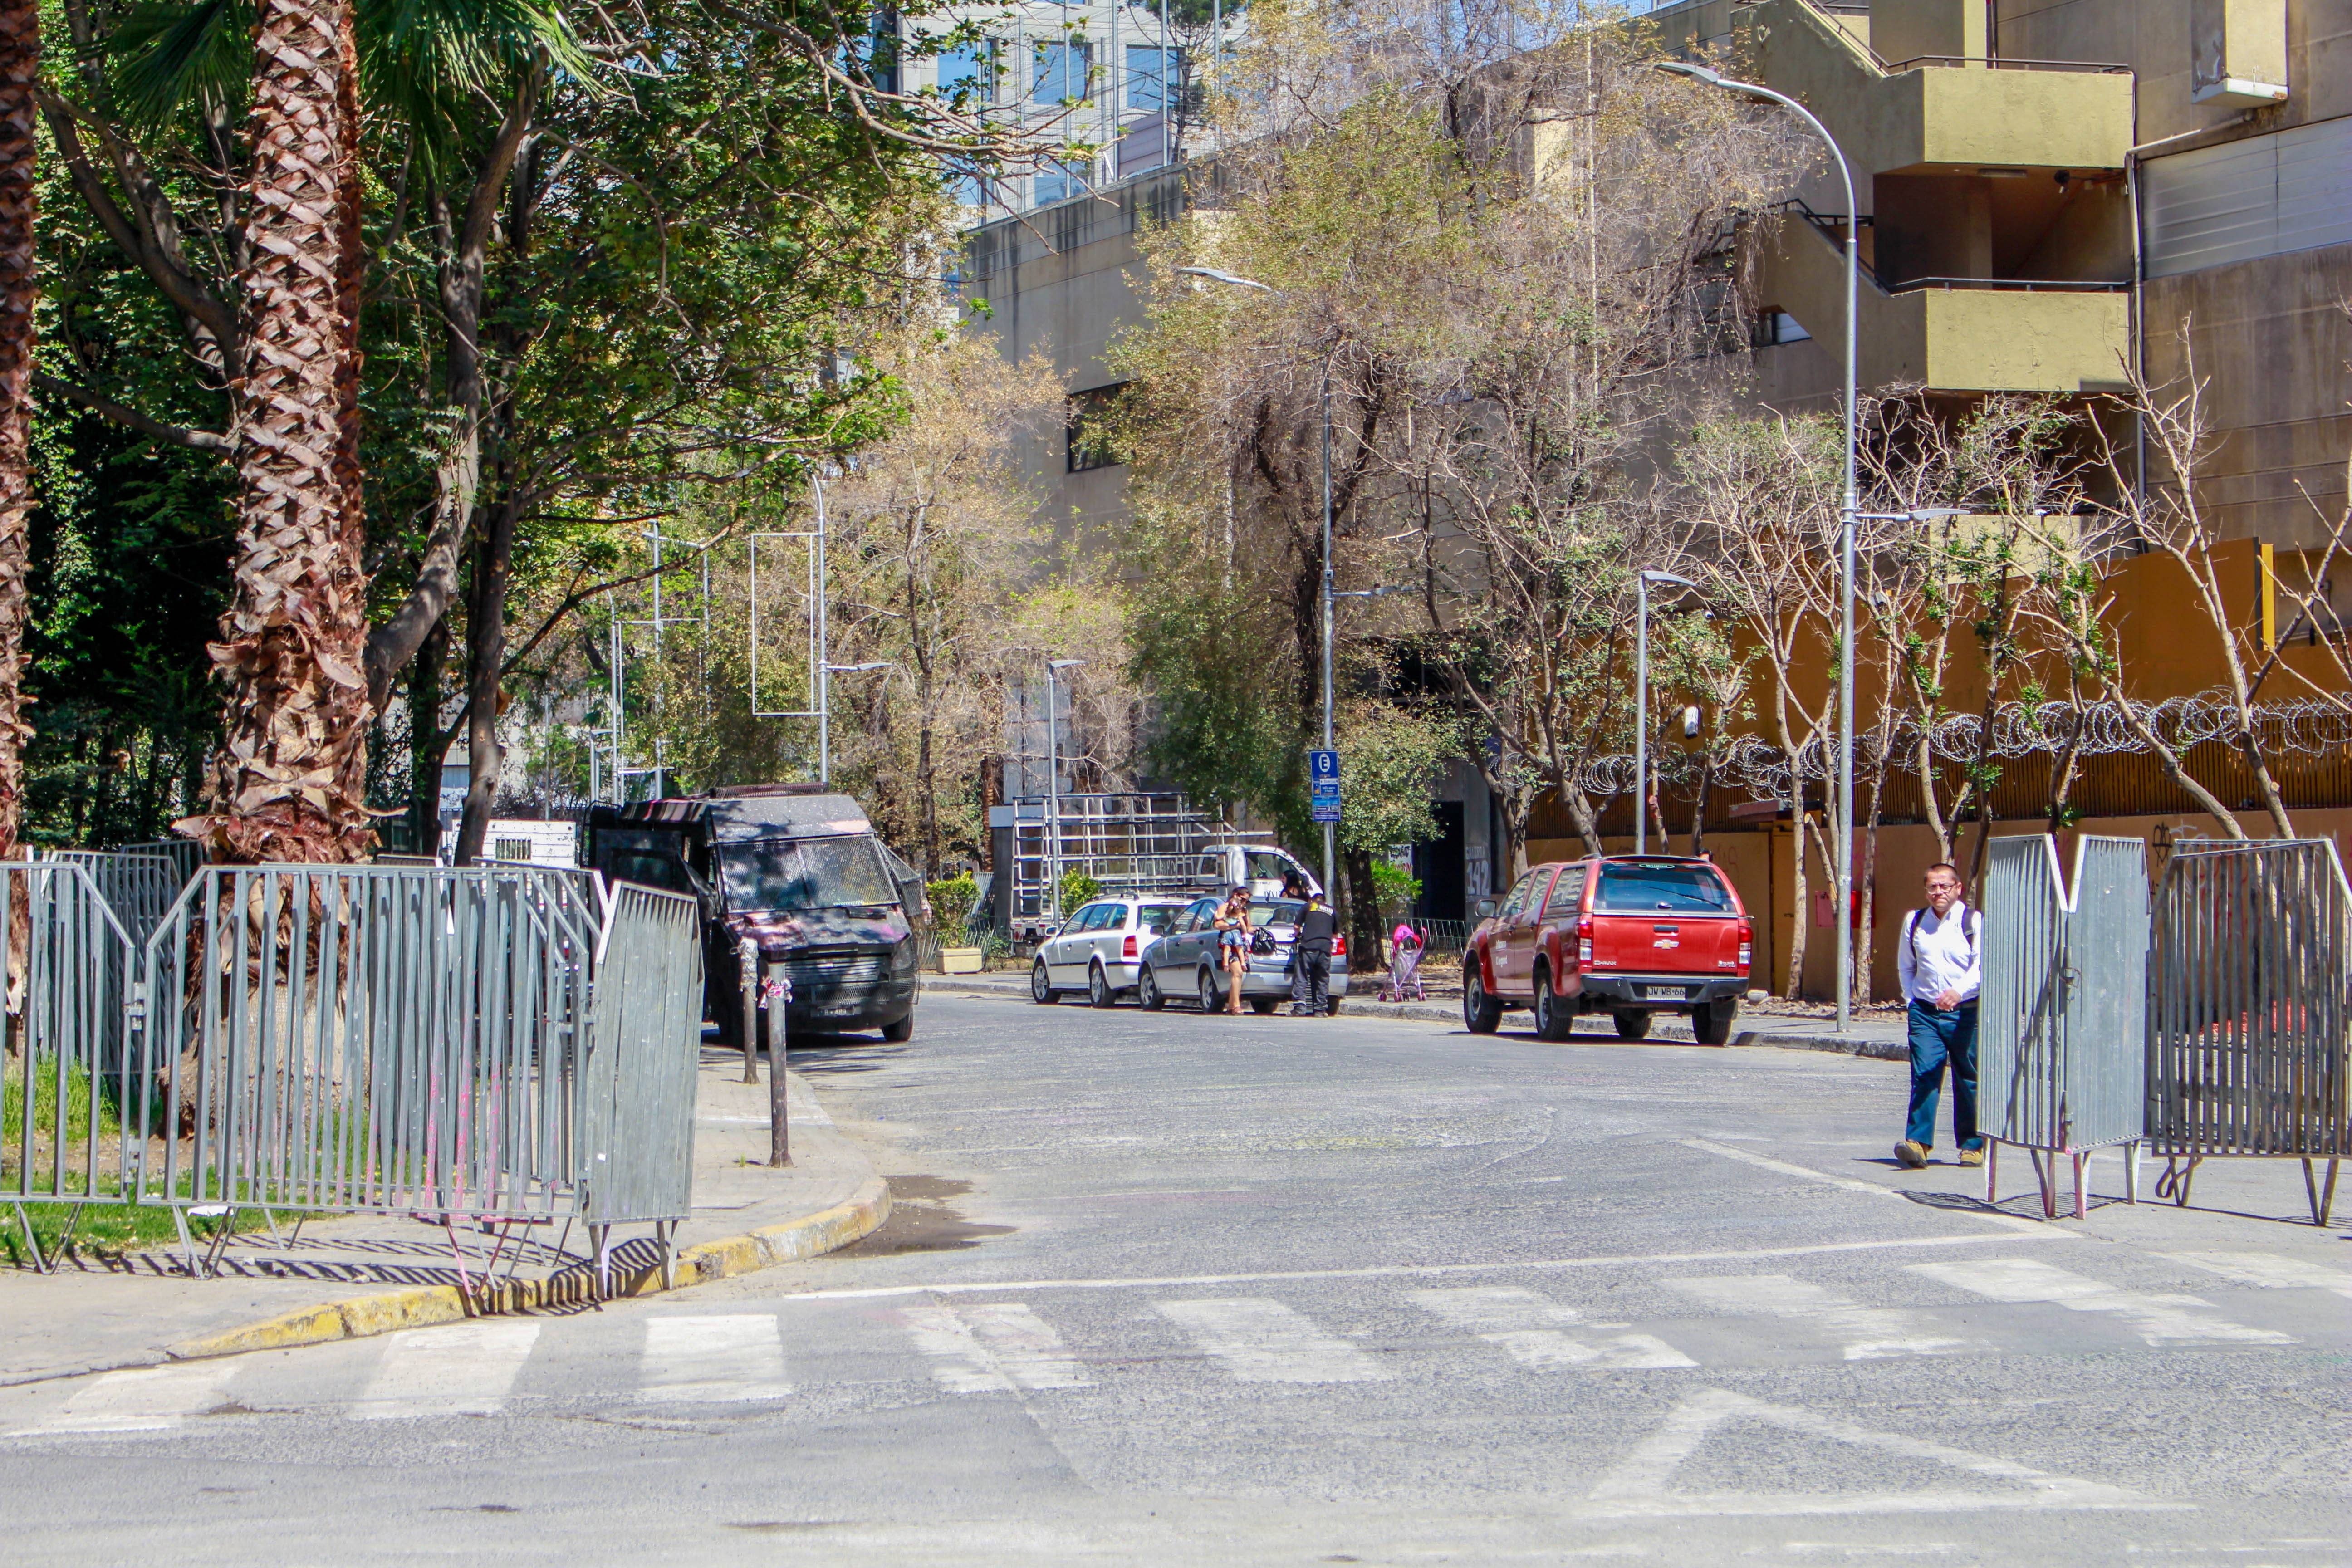 La entrada a la galería musical de la Alameda se encuentra por la calle Carabineros de Chile, donde ocurren los enfrentamientos cuando baja el sol